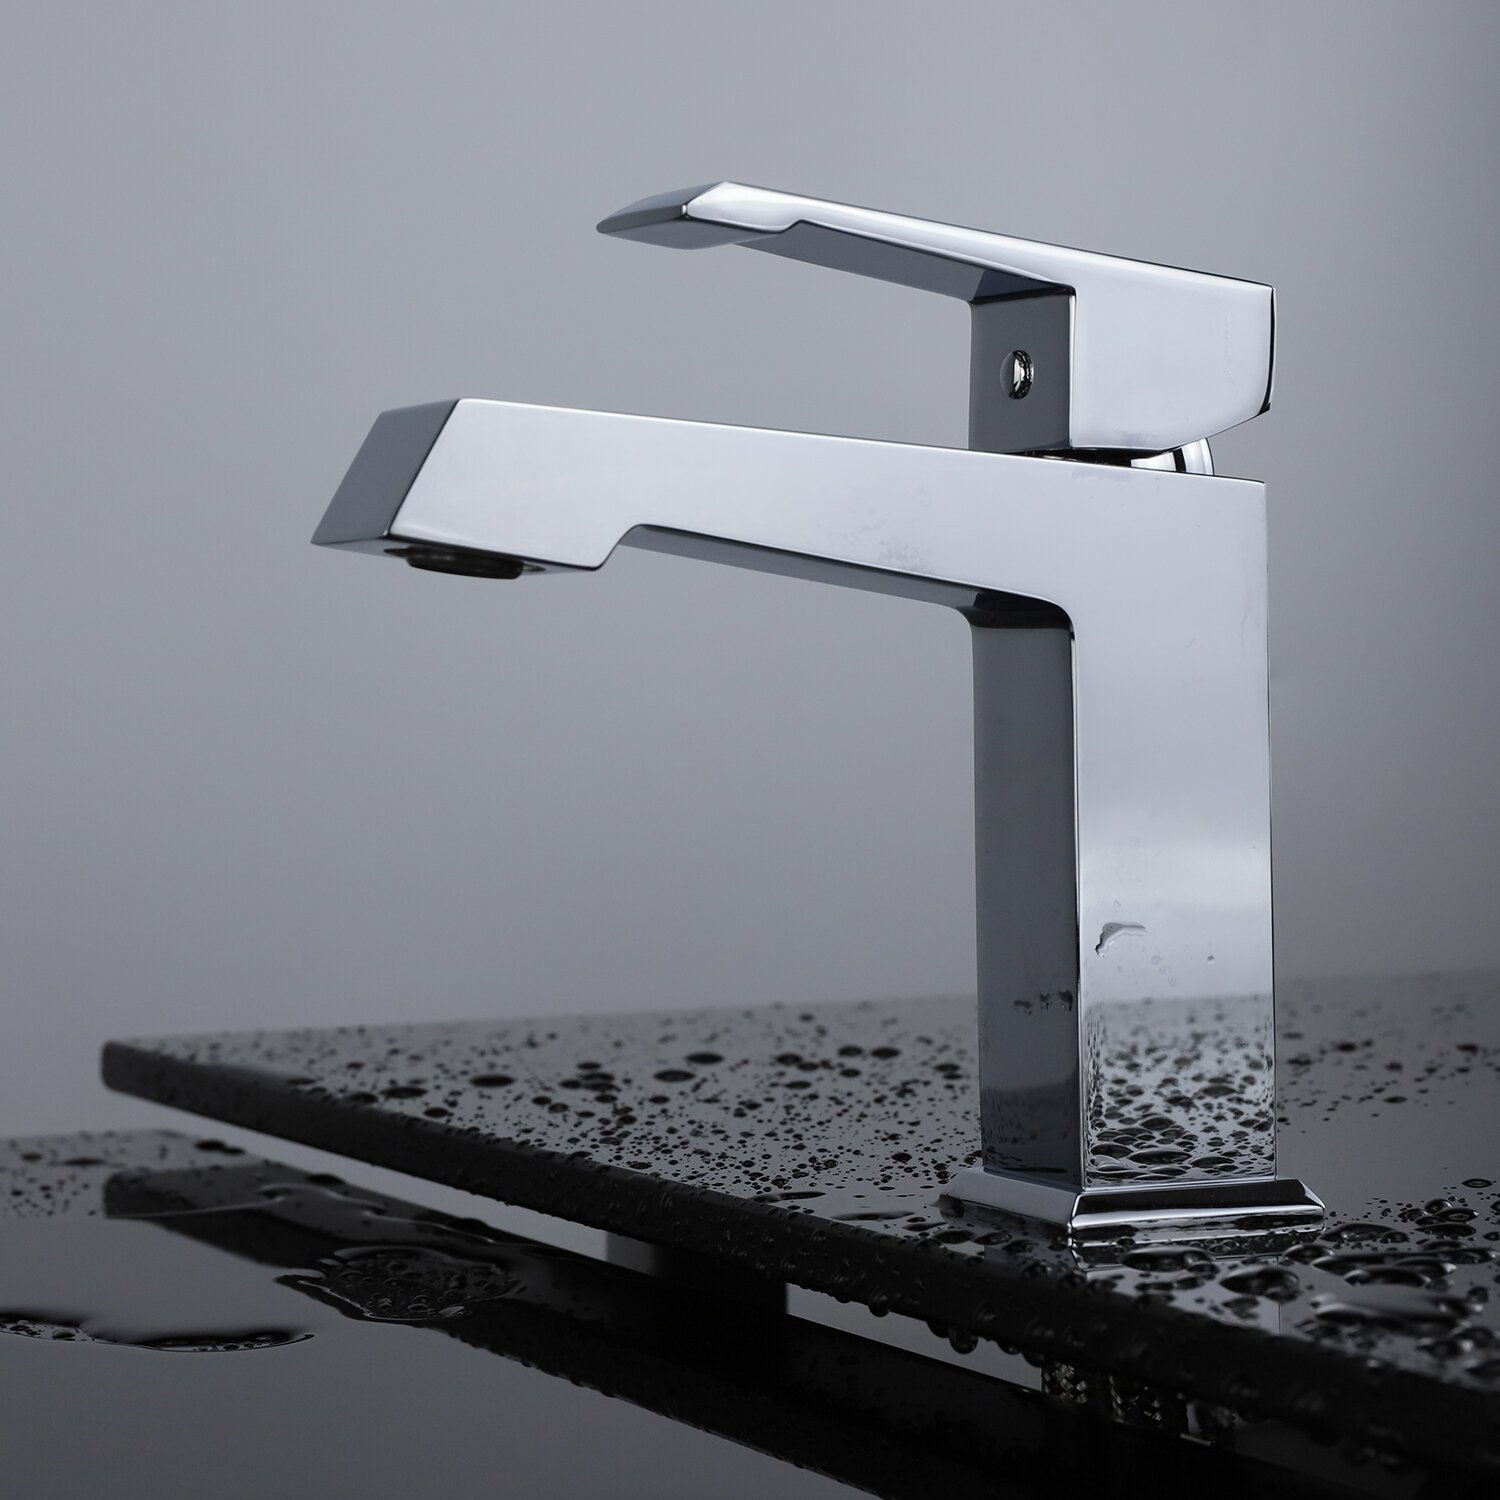 Hochwertiges Design, Messing-Metall-Chrom-Finish, für WC, Badezimmer, Waschbecken, Waschbecken